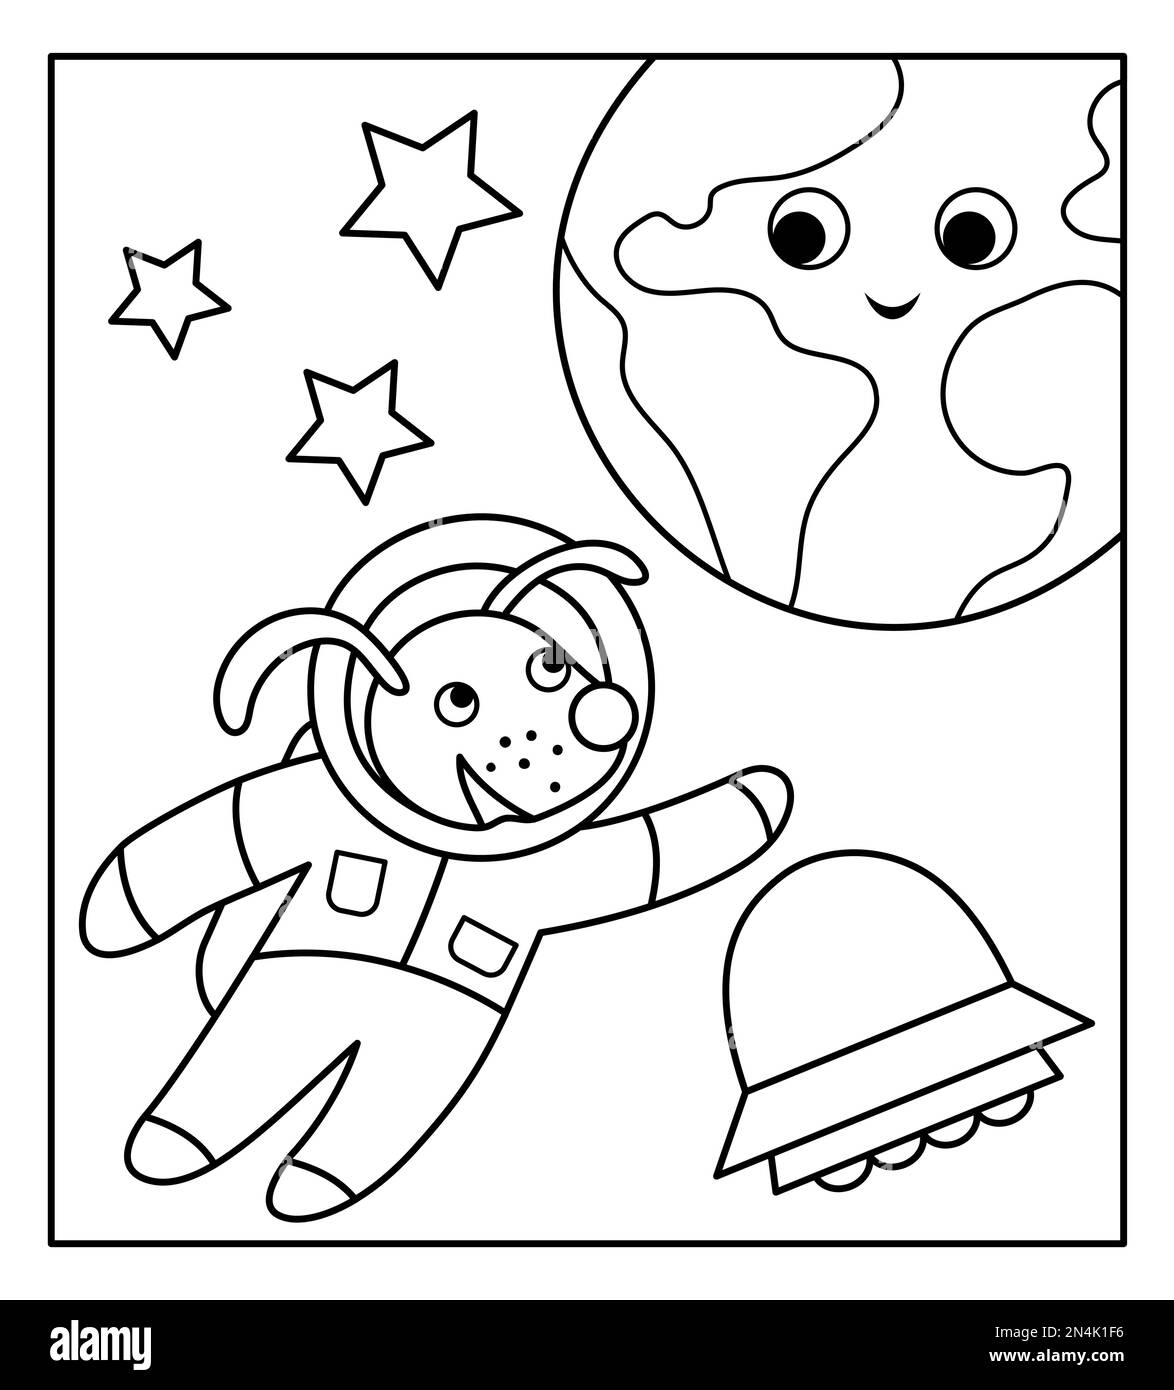 Vector schwarz-weiß witziger Astronautenhund im Weltraum mit Planet Erde, Sternen, UFO. Süße kosmische Illustration für Kinder. Astronomie-Färbung mit Stock Vektor